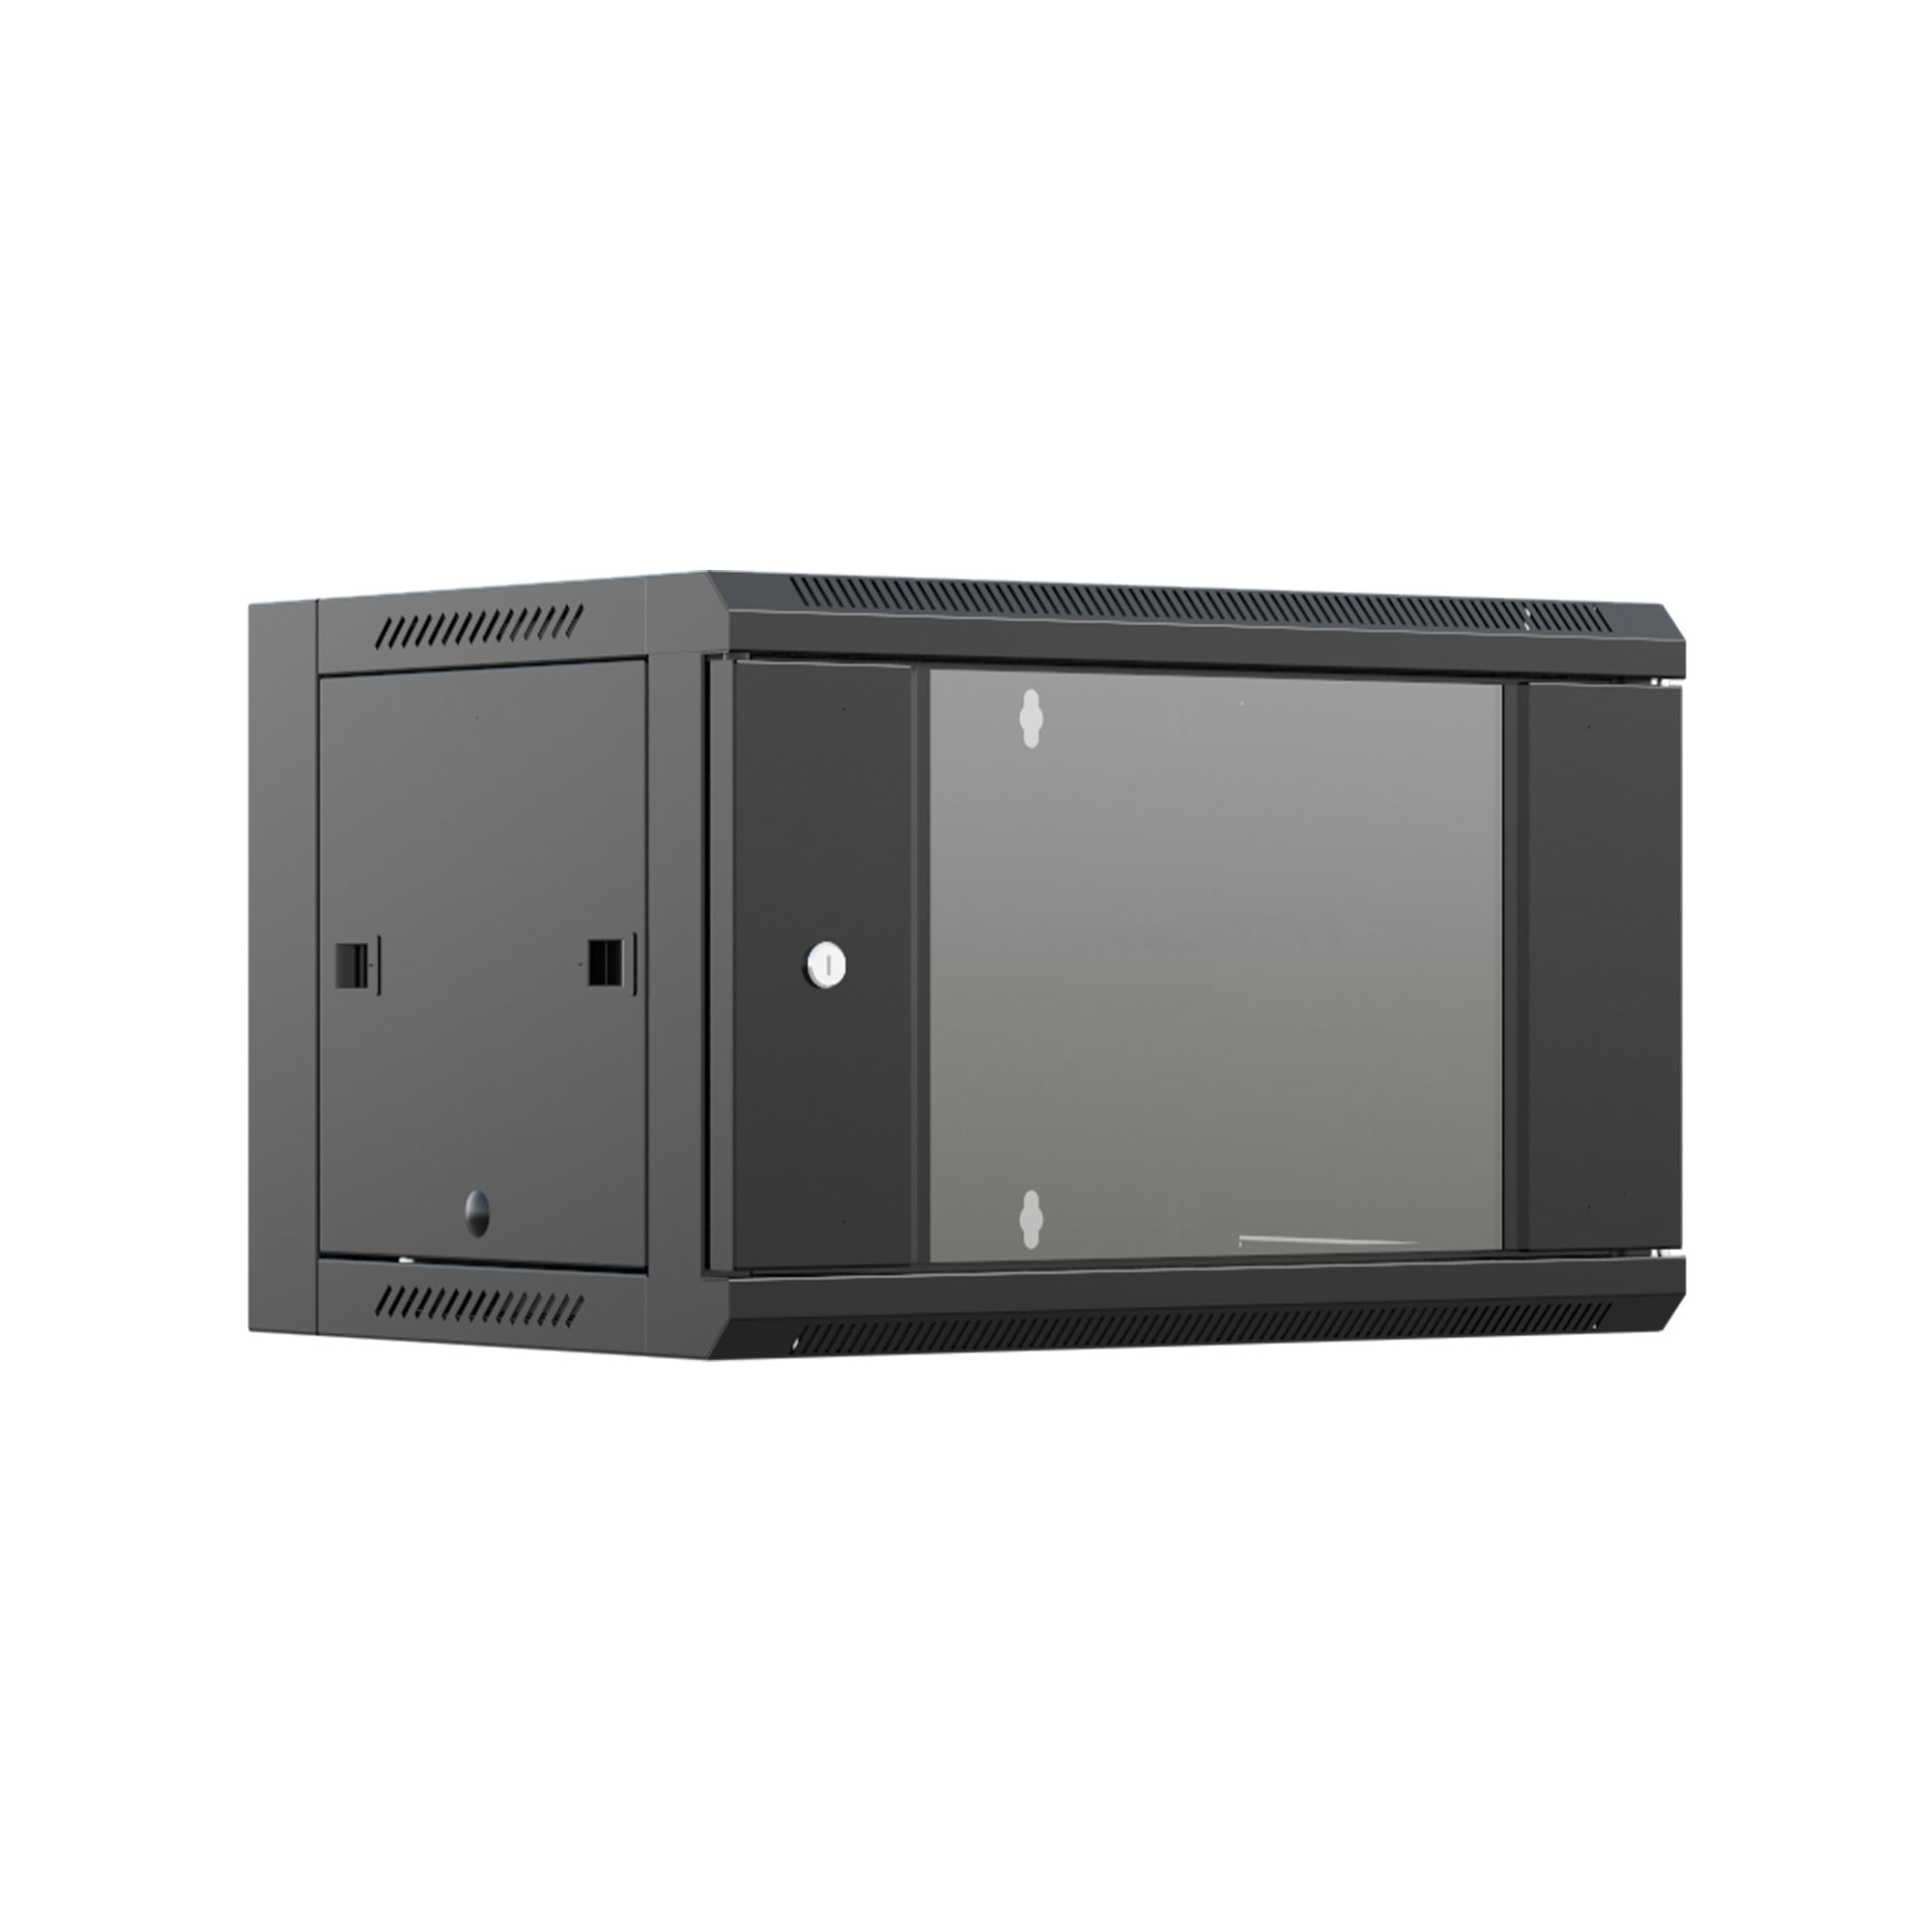 Шкаф настенный телекоммуникационный NTSS W 12U 600х450х635мм, 2 профиля 19, дверь стеклянная, боковые стенки съемные, задняя стенка, разобранный, черный RAL 9005